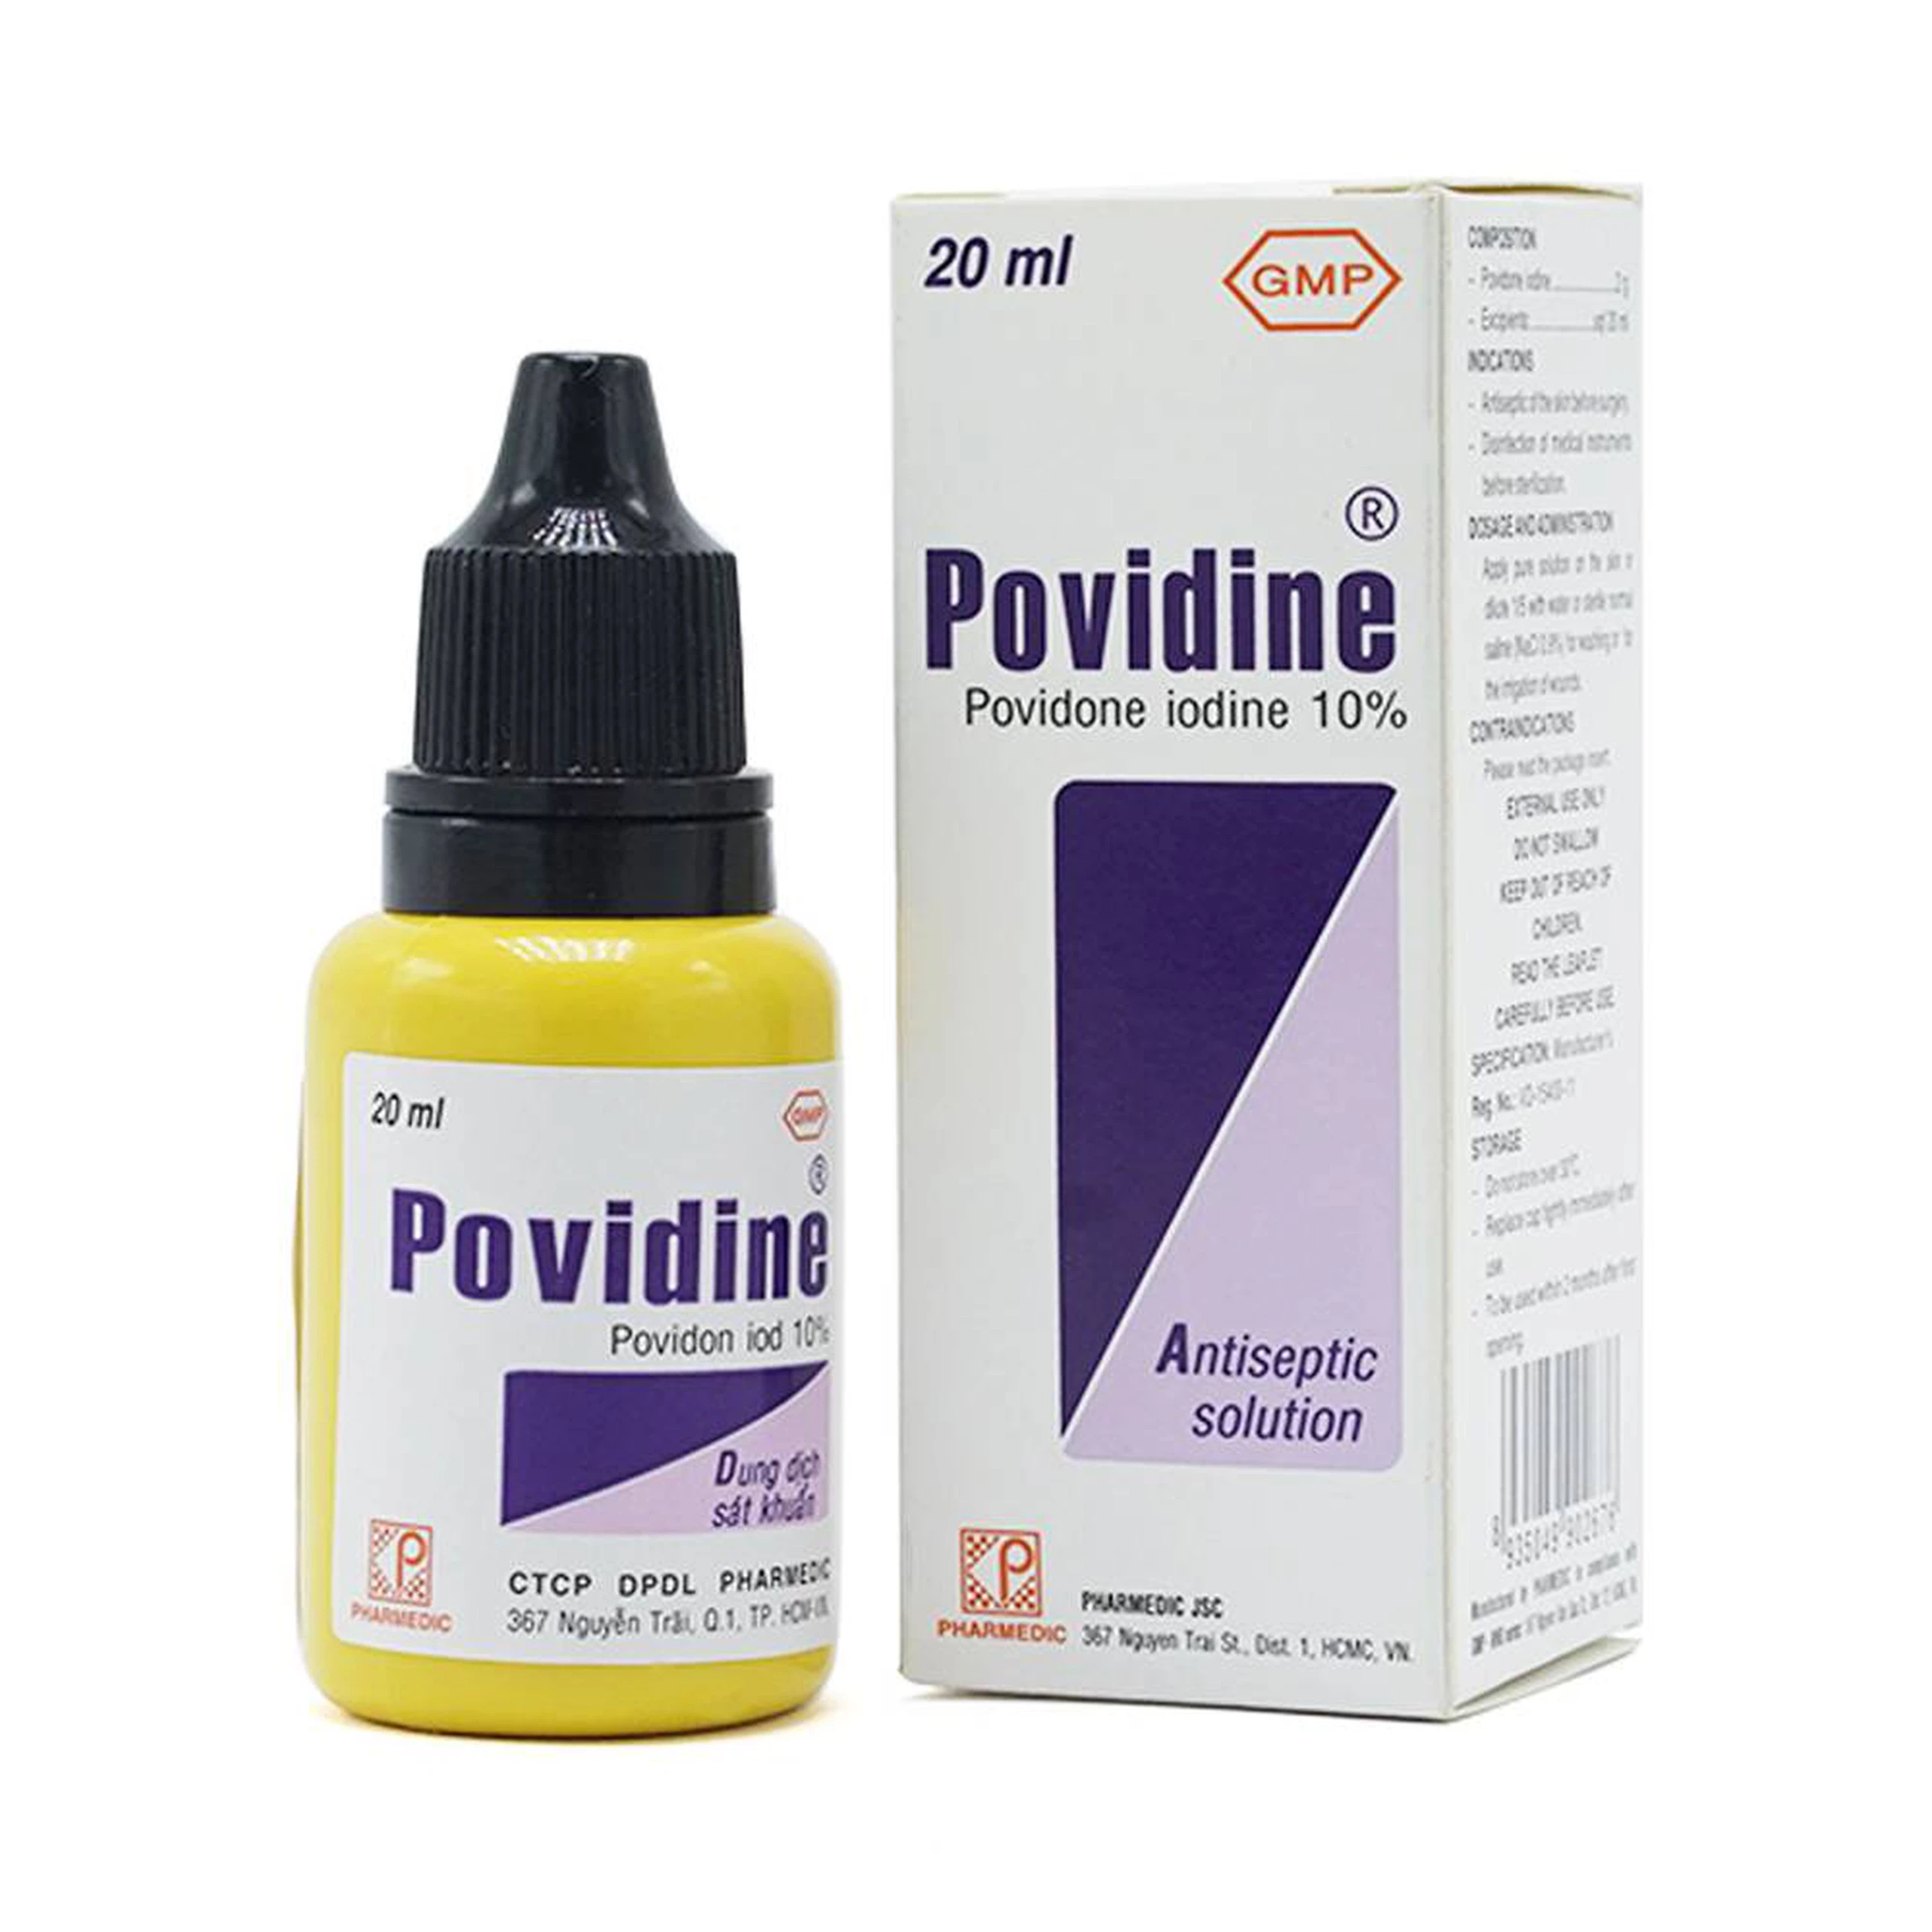 Dung dịch sát khuẩn Povidine 10% Pharmedic ngăn ngừa nhiễm khuẩn ở vết cắt, vết trầy (20ml)